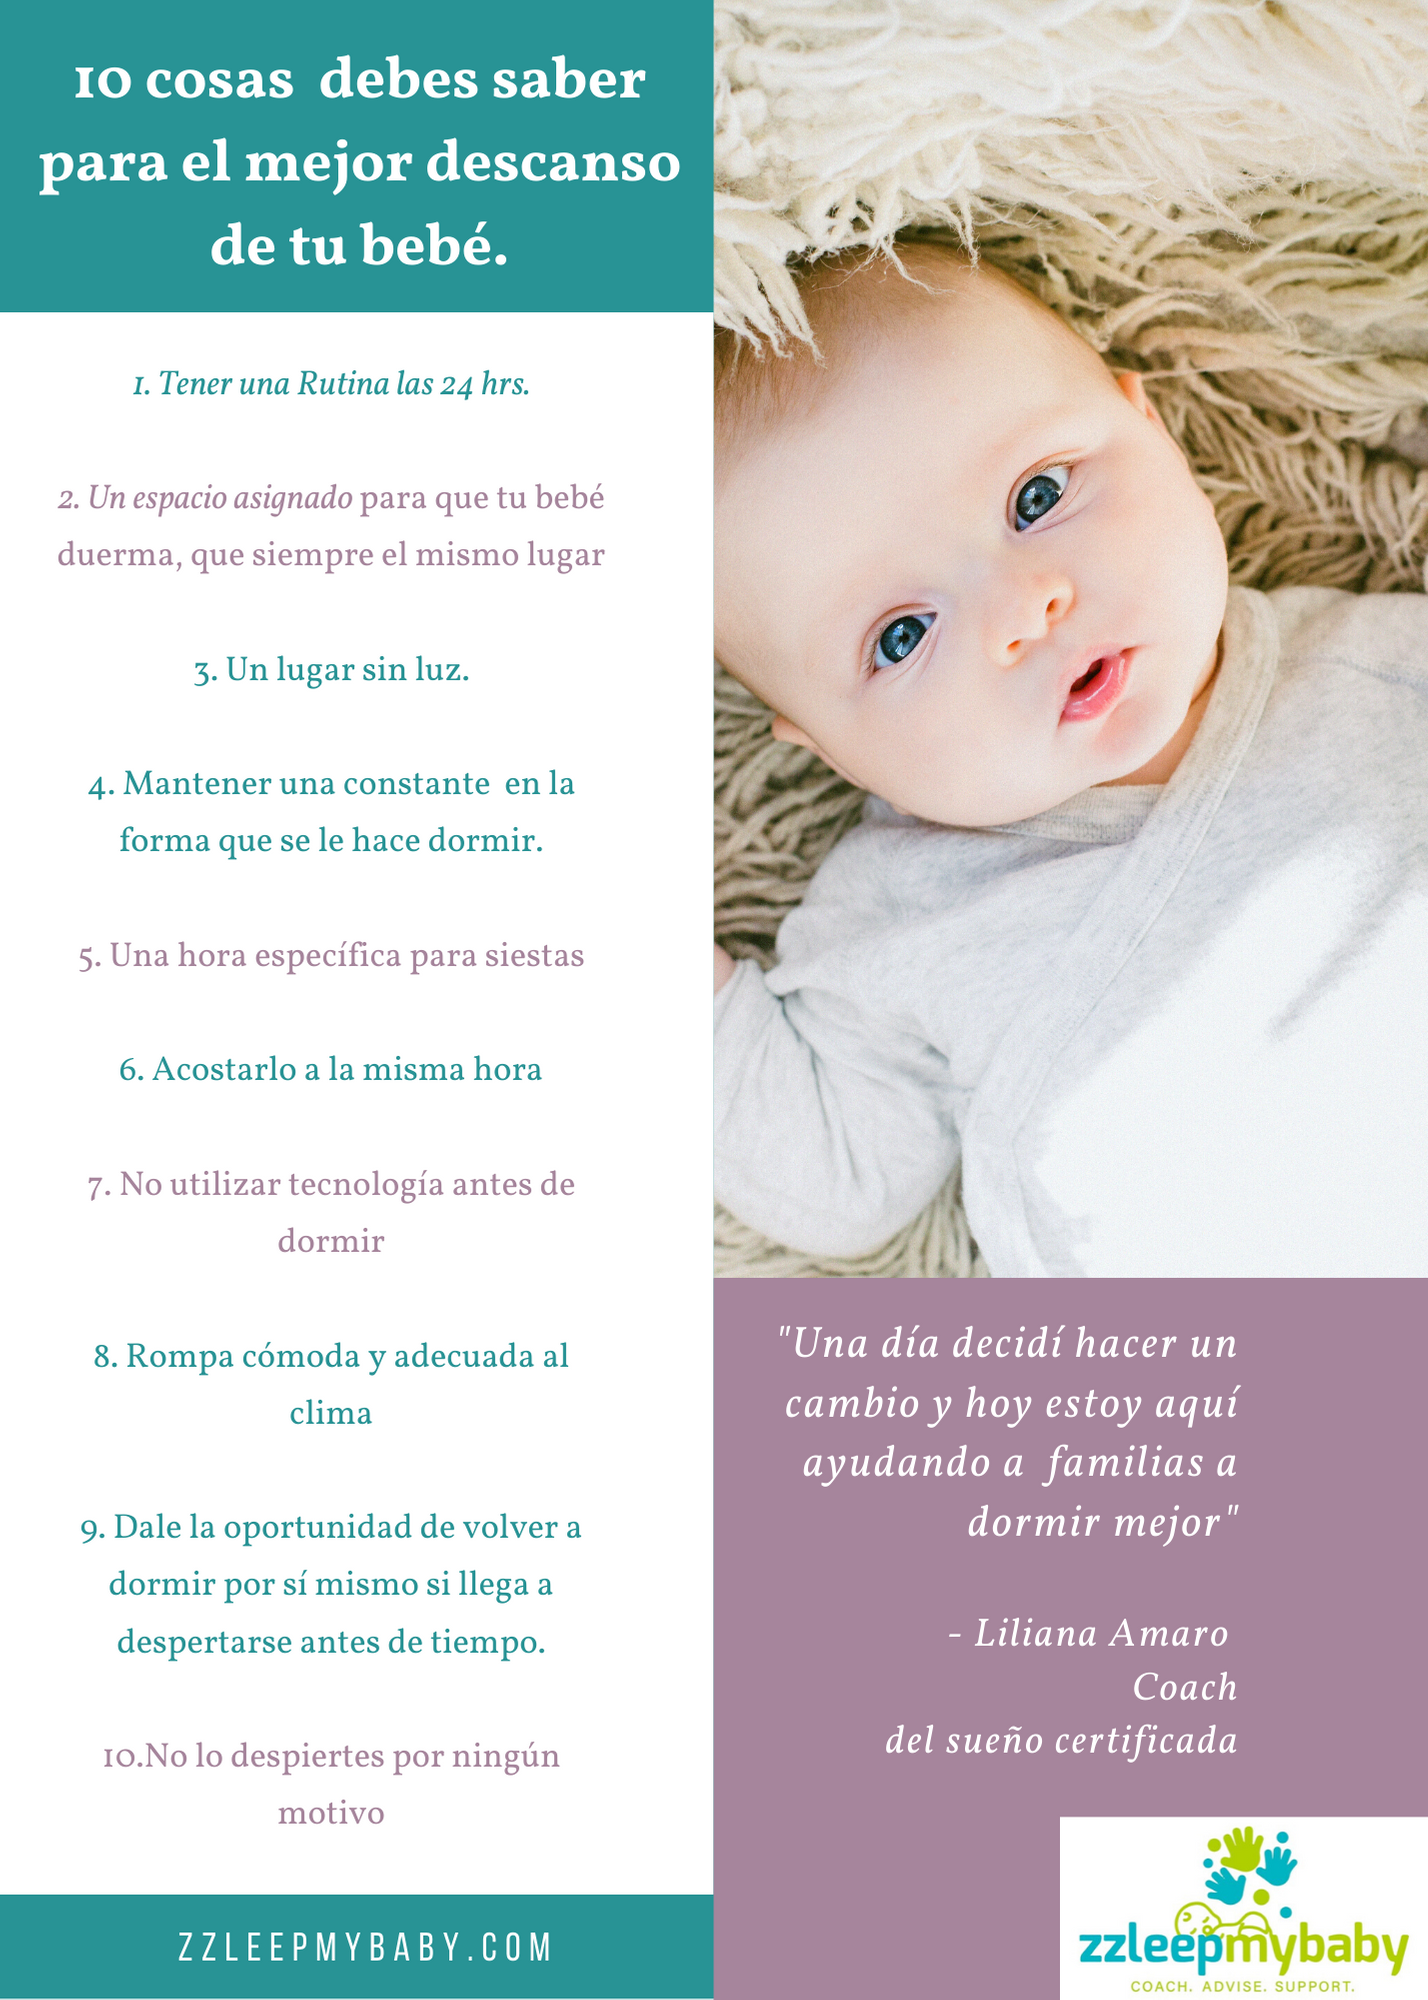 10 cosas esenciales que debes saber para el mejor descanso de tu bebé